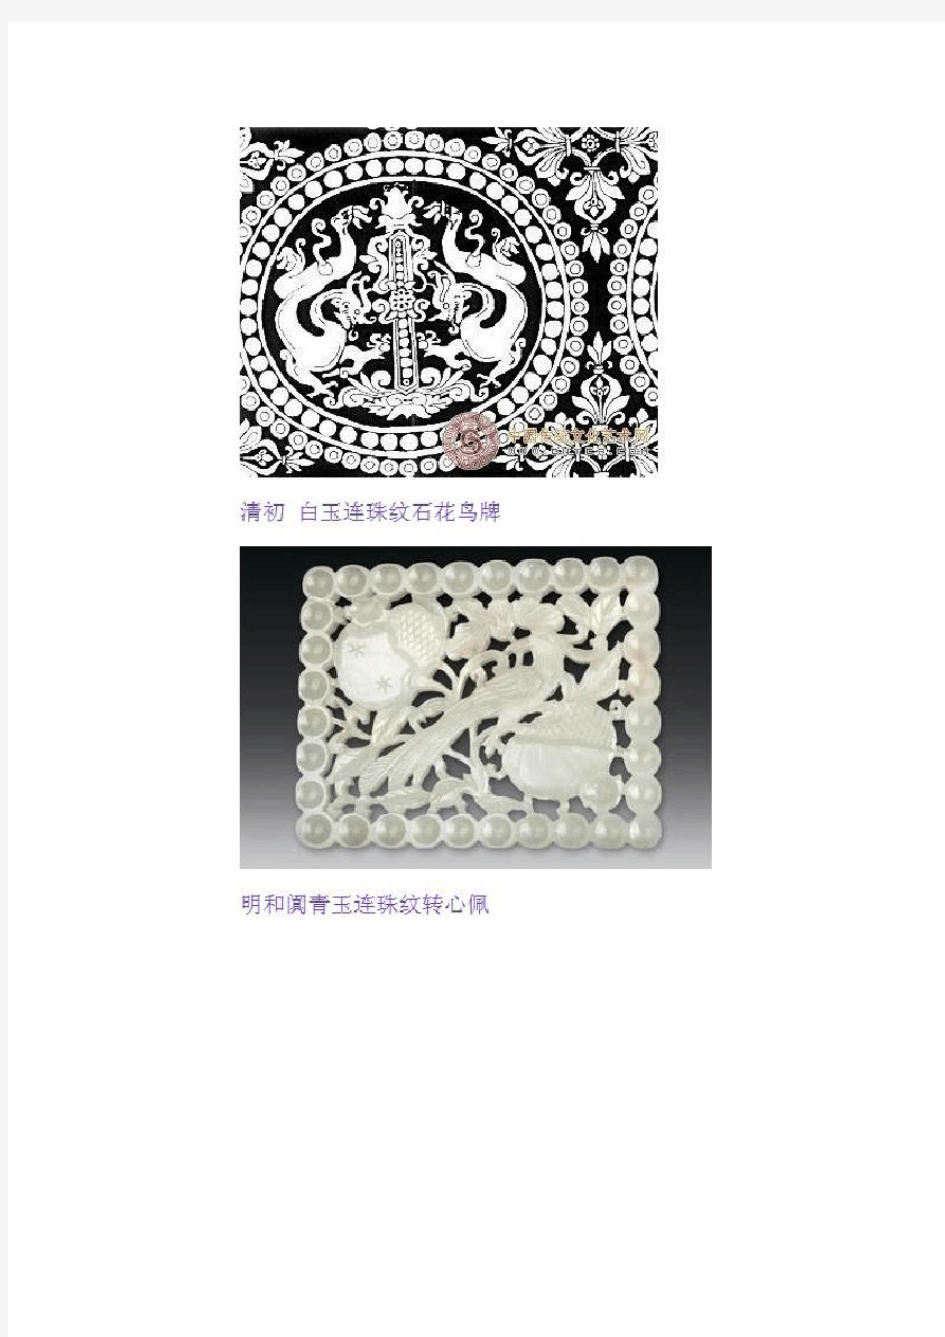 中国传统纹样-几何纹样篇